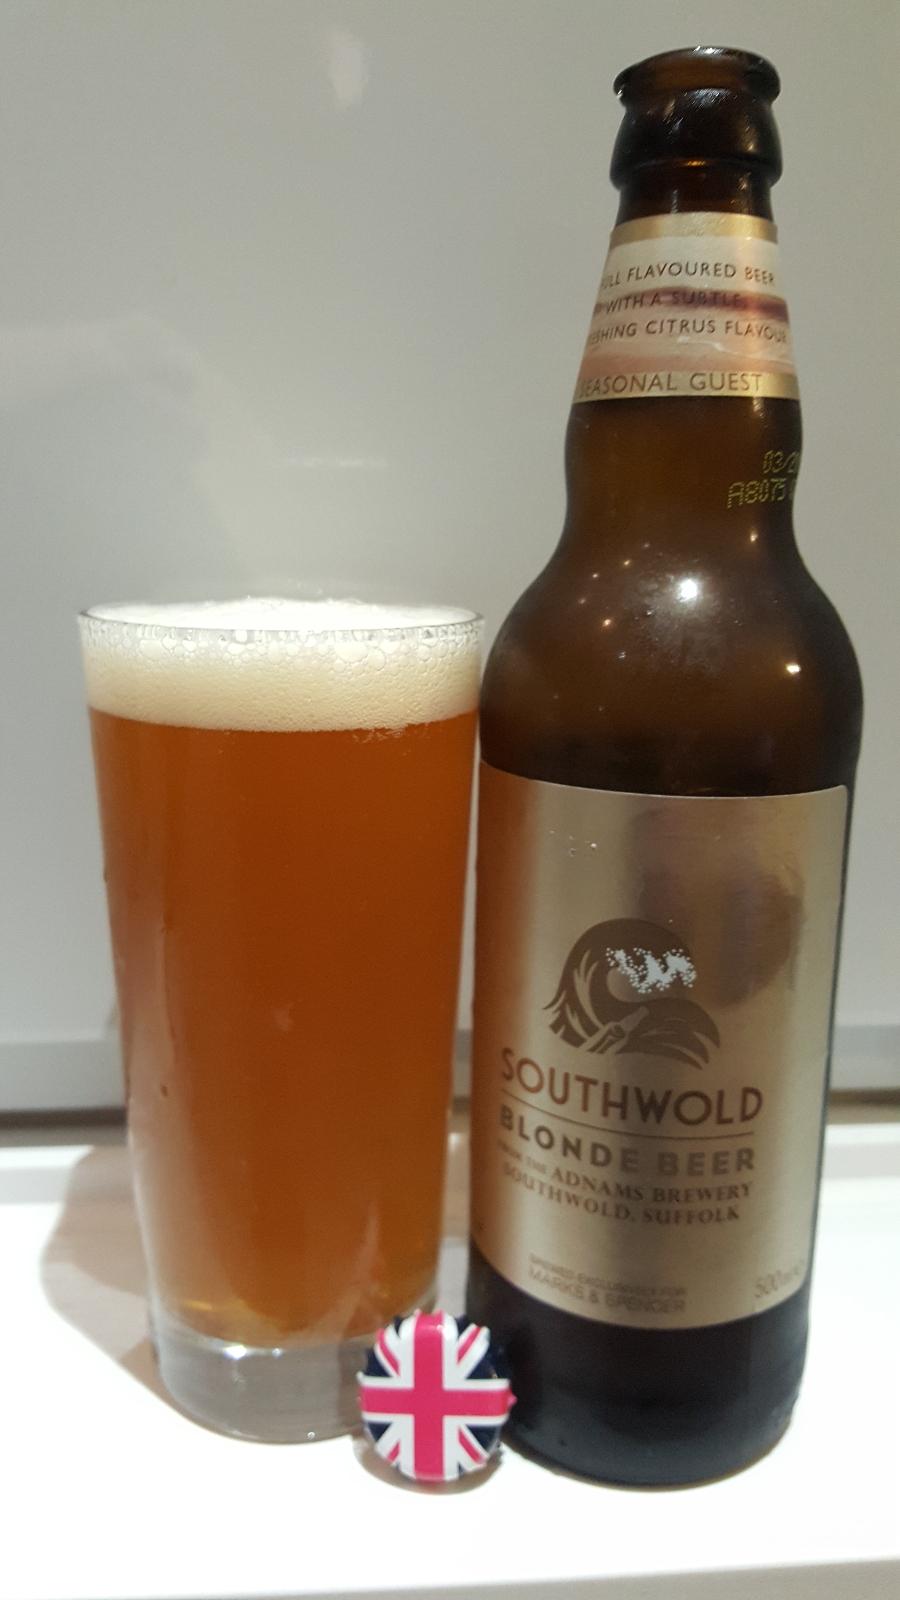 Southwold Blonde Beer